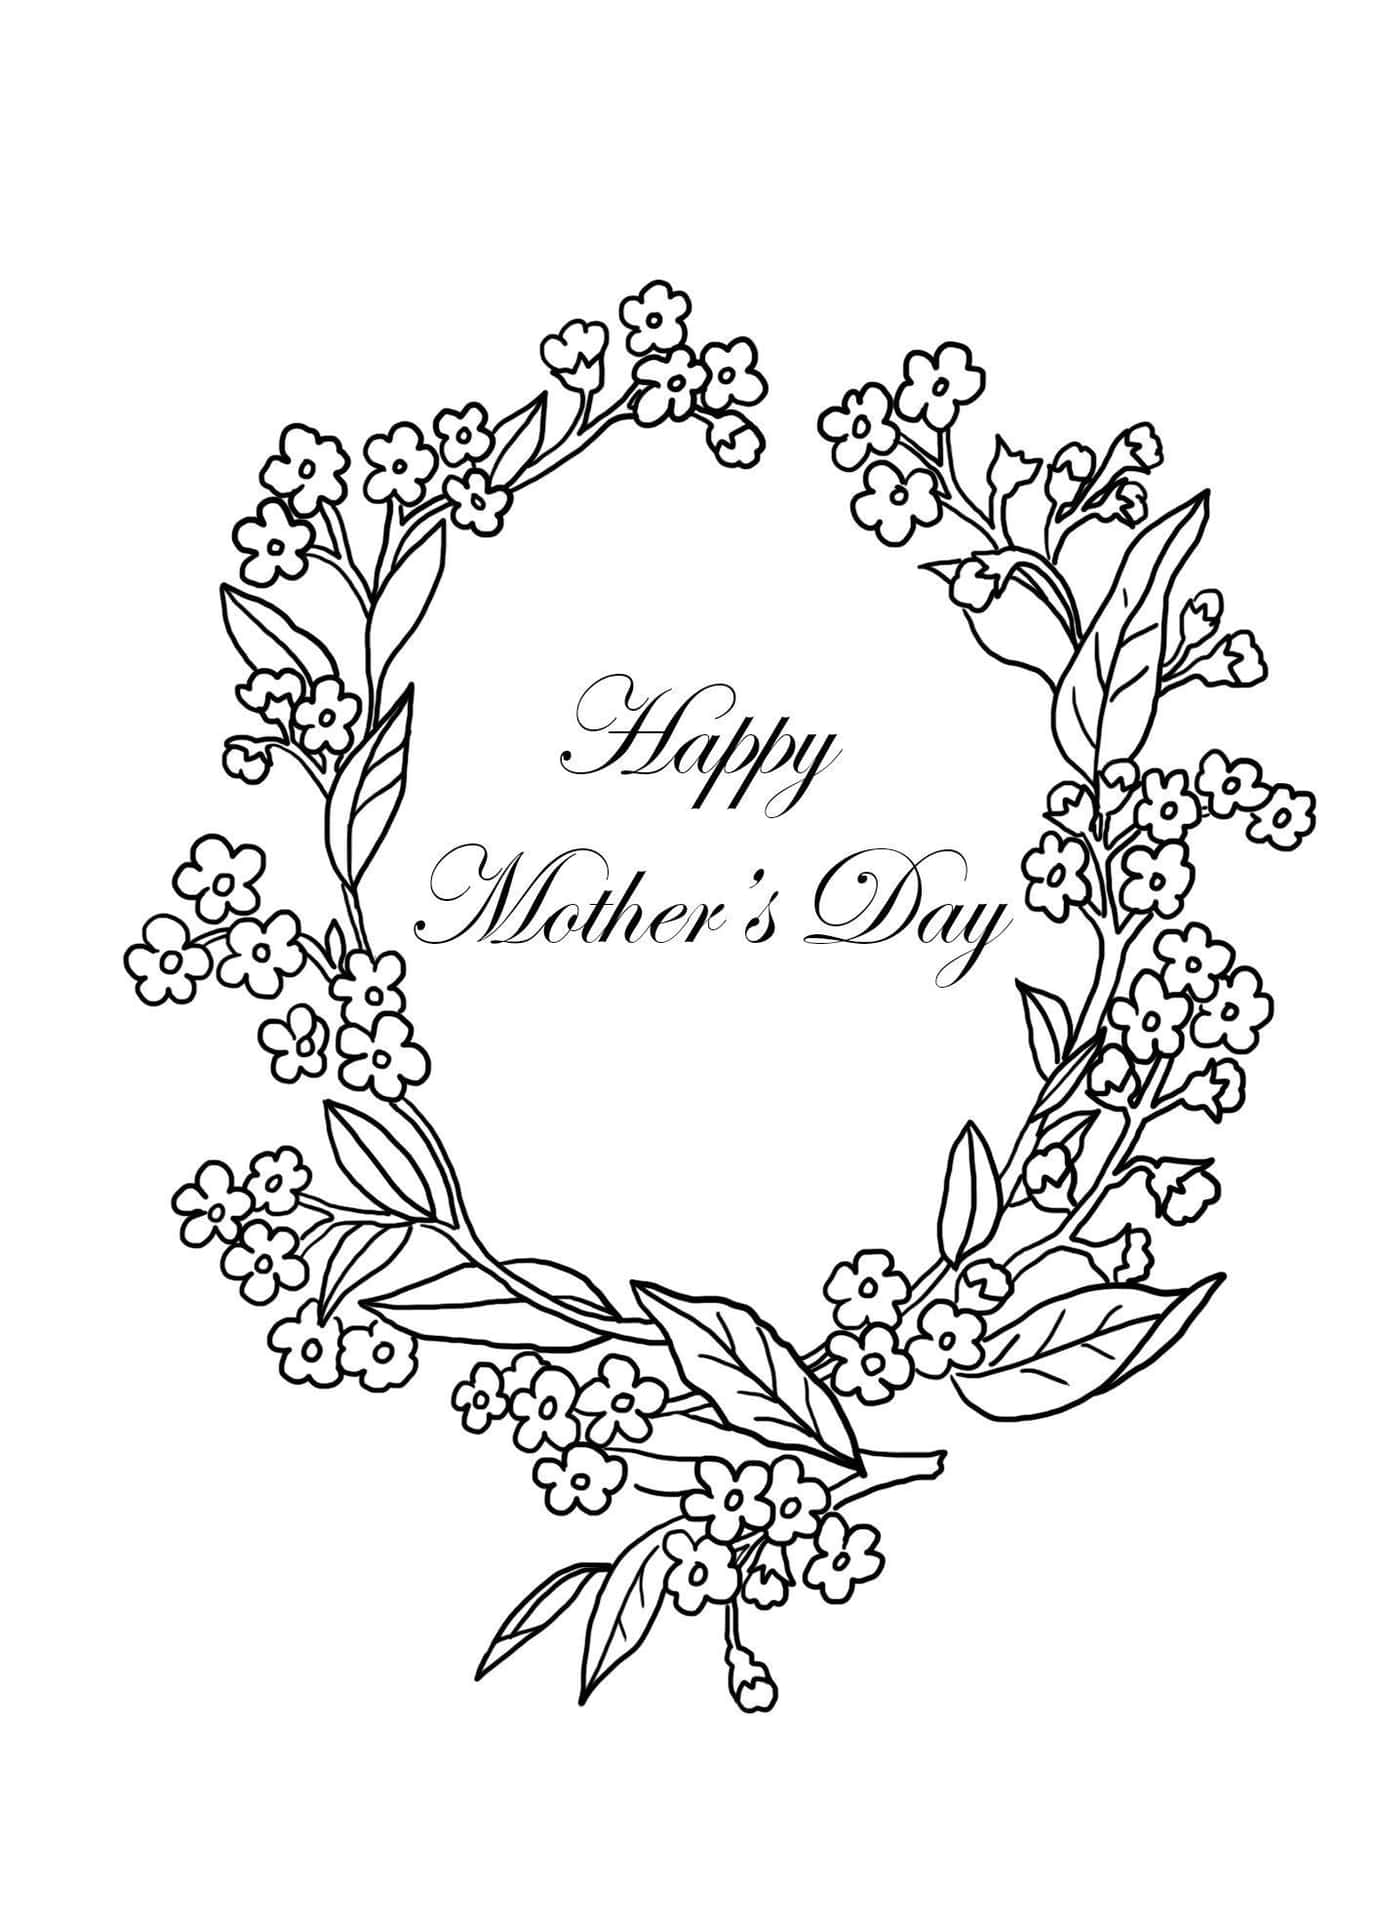 Dalelas Gracias A Las Madres En Todas Partes En El Día De La Madre